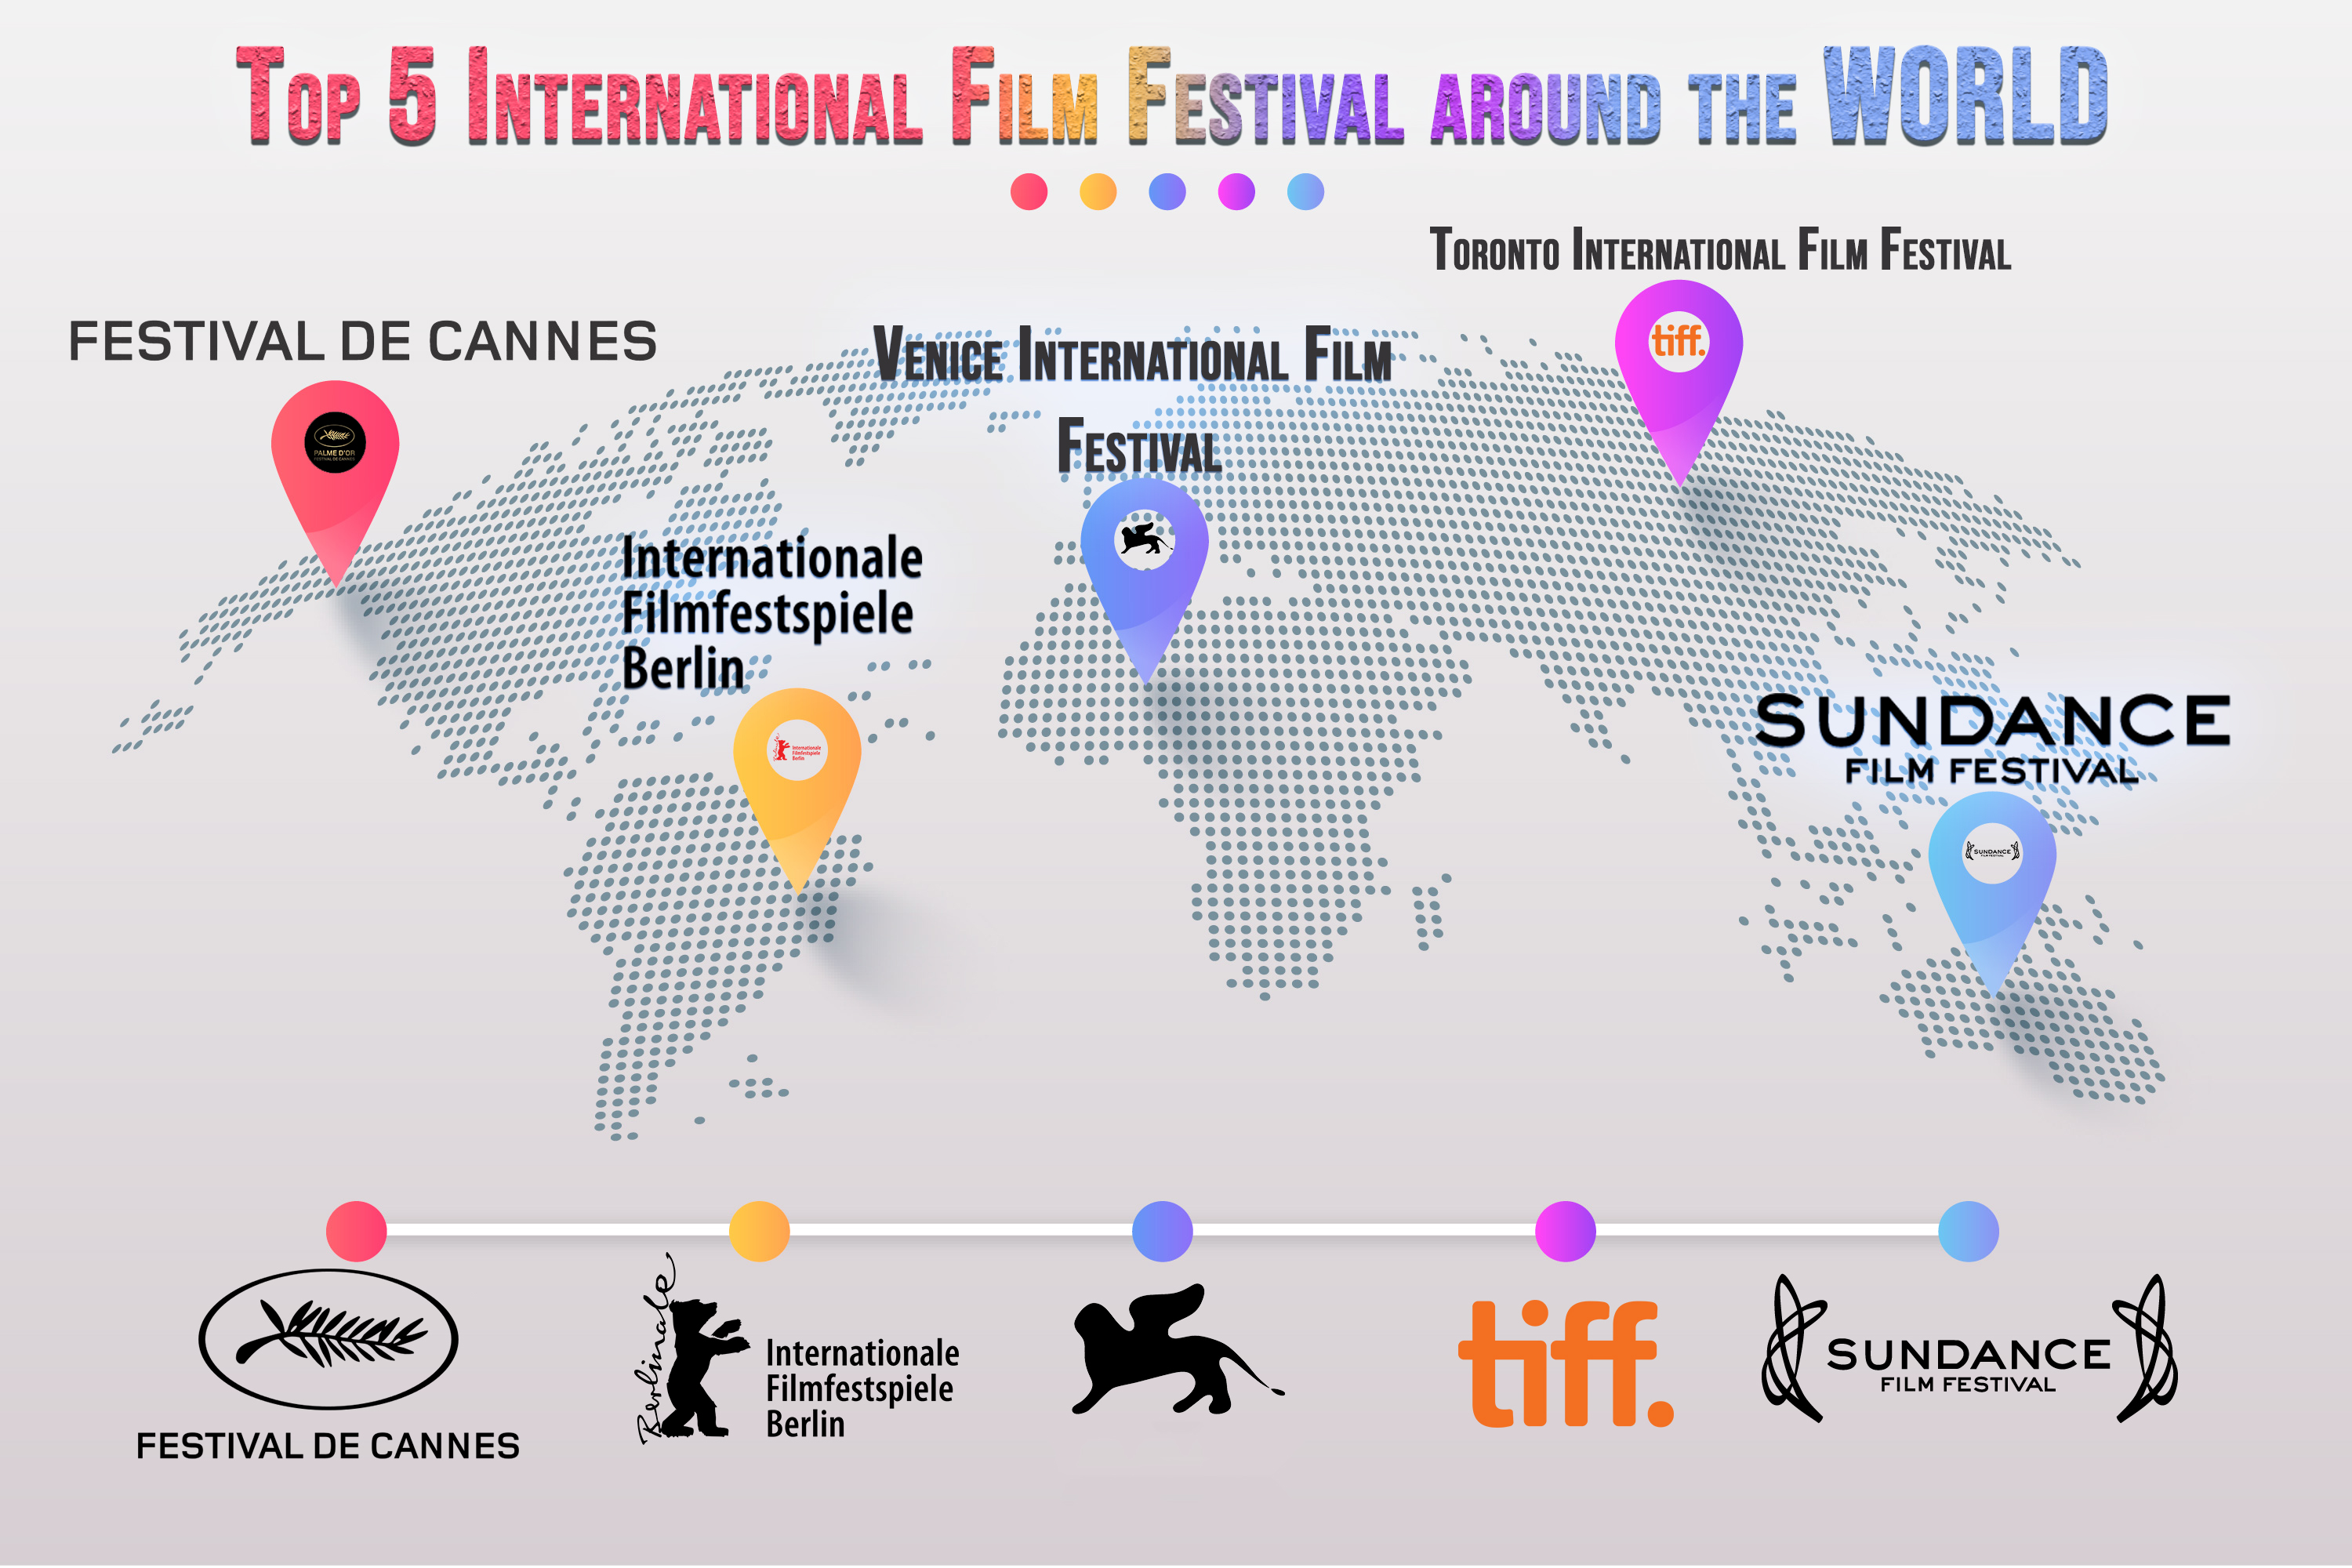 Top 5 International Film Festivals around the World